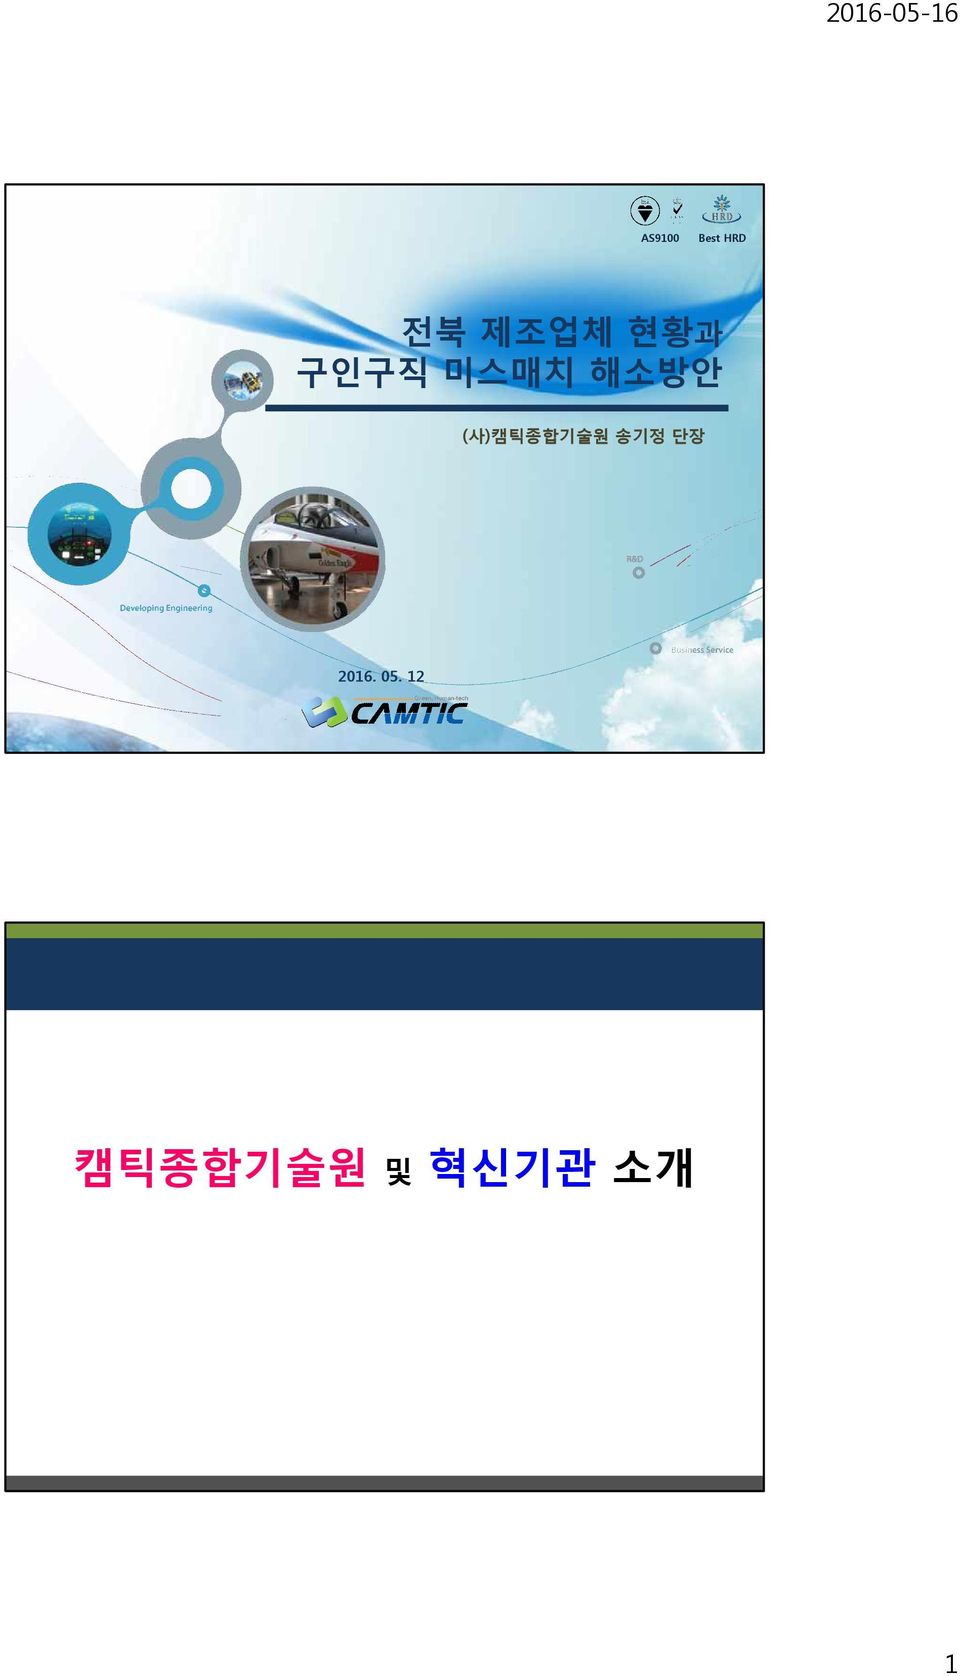 (사)캠틱종합기술원 송기정 단장 2016.